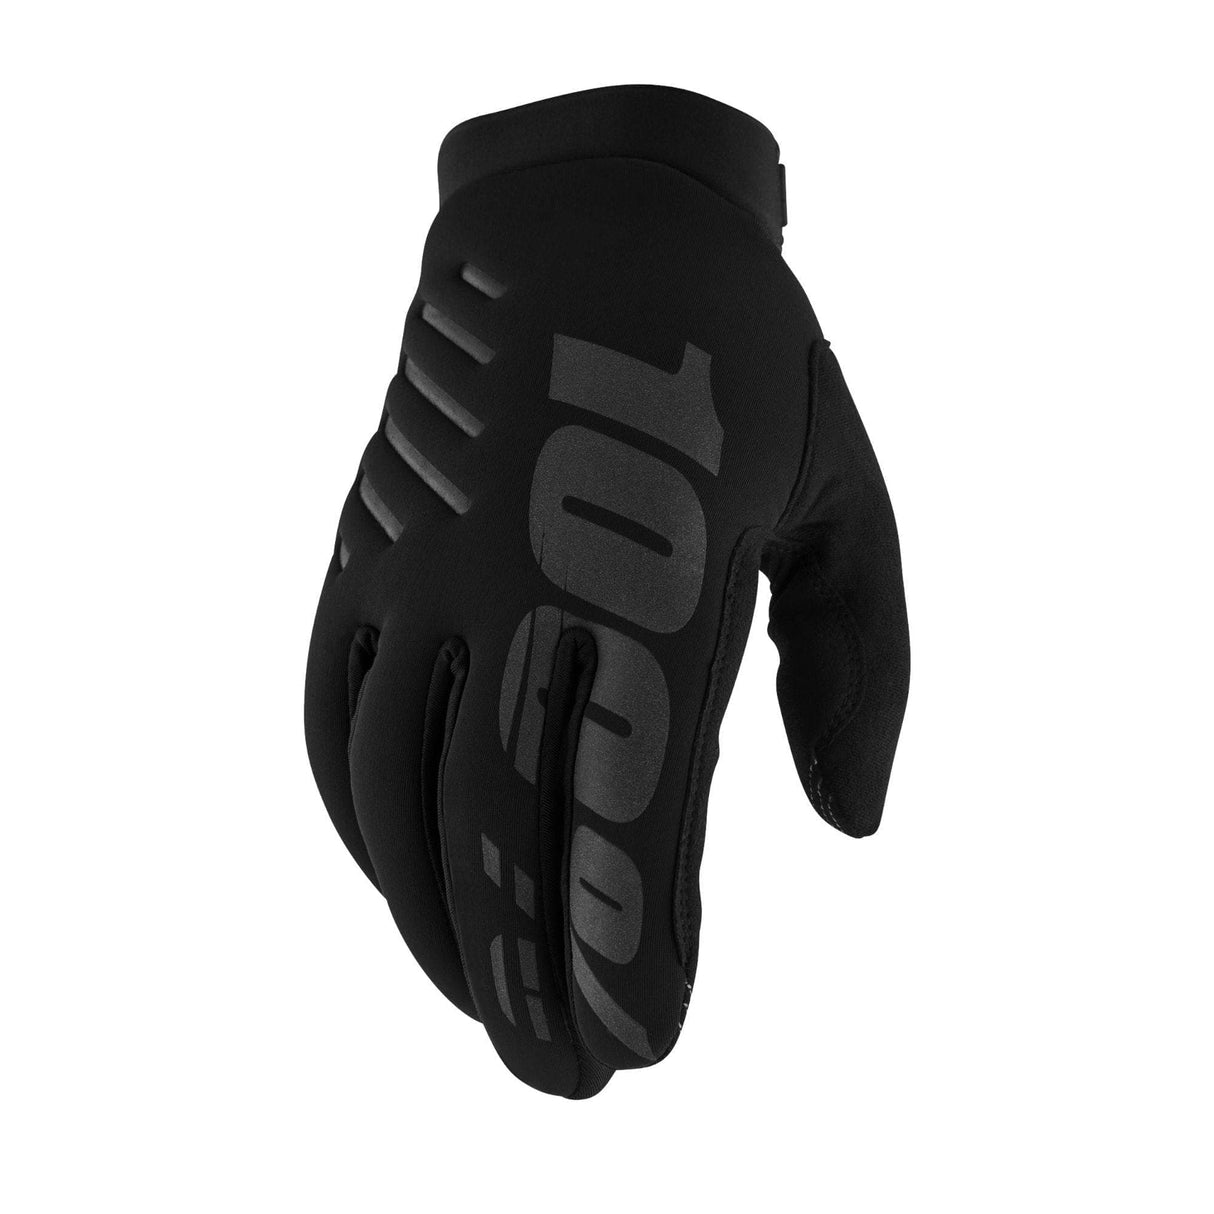 100% Brisker Cold Weather Glove - Black / Grey - XXL